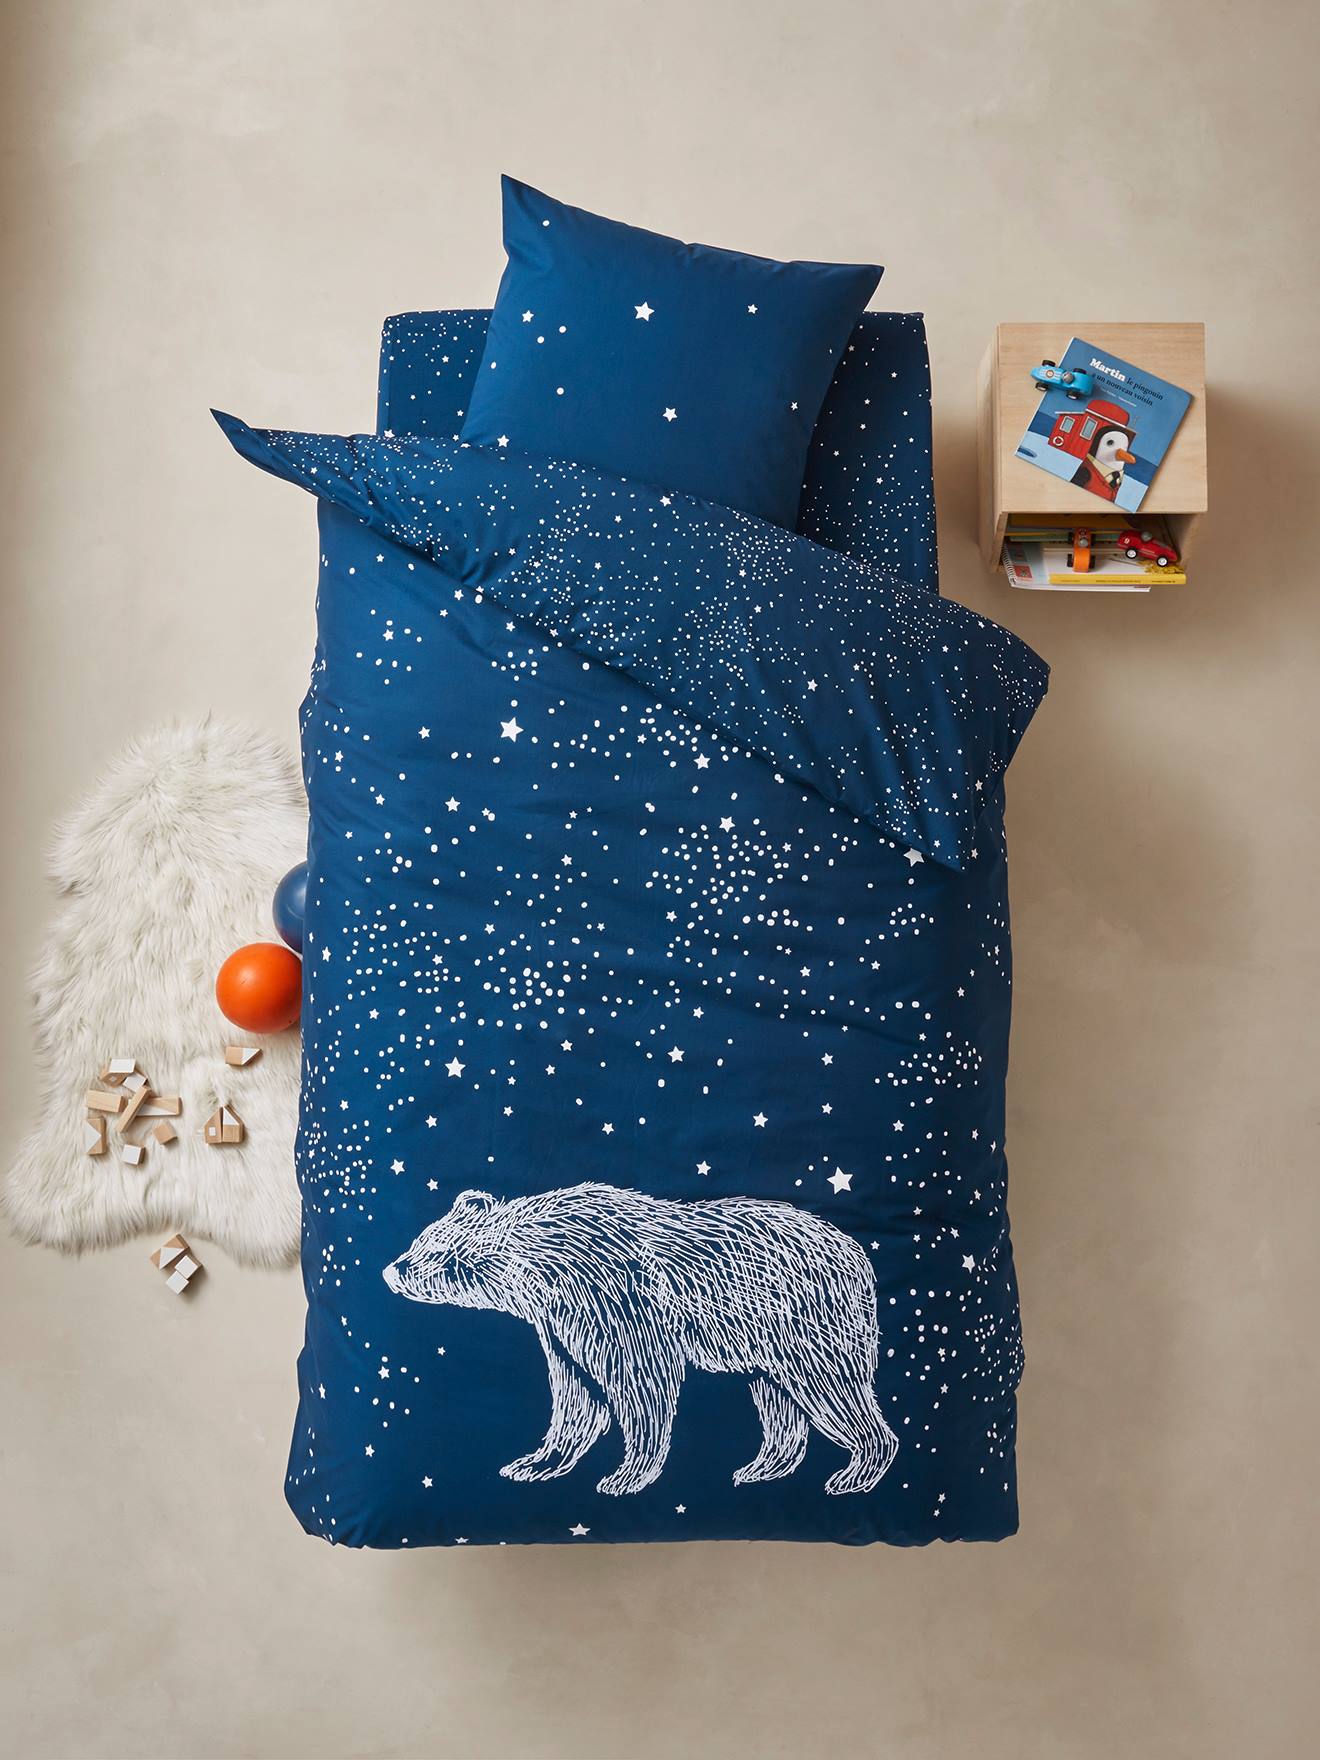 Conjunto capa de edredon com detalhes fosforescentes + fronha de almofada para criança, tema Urso Polar azul escuro liso com motivo